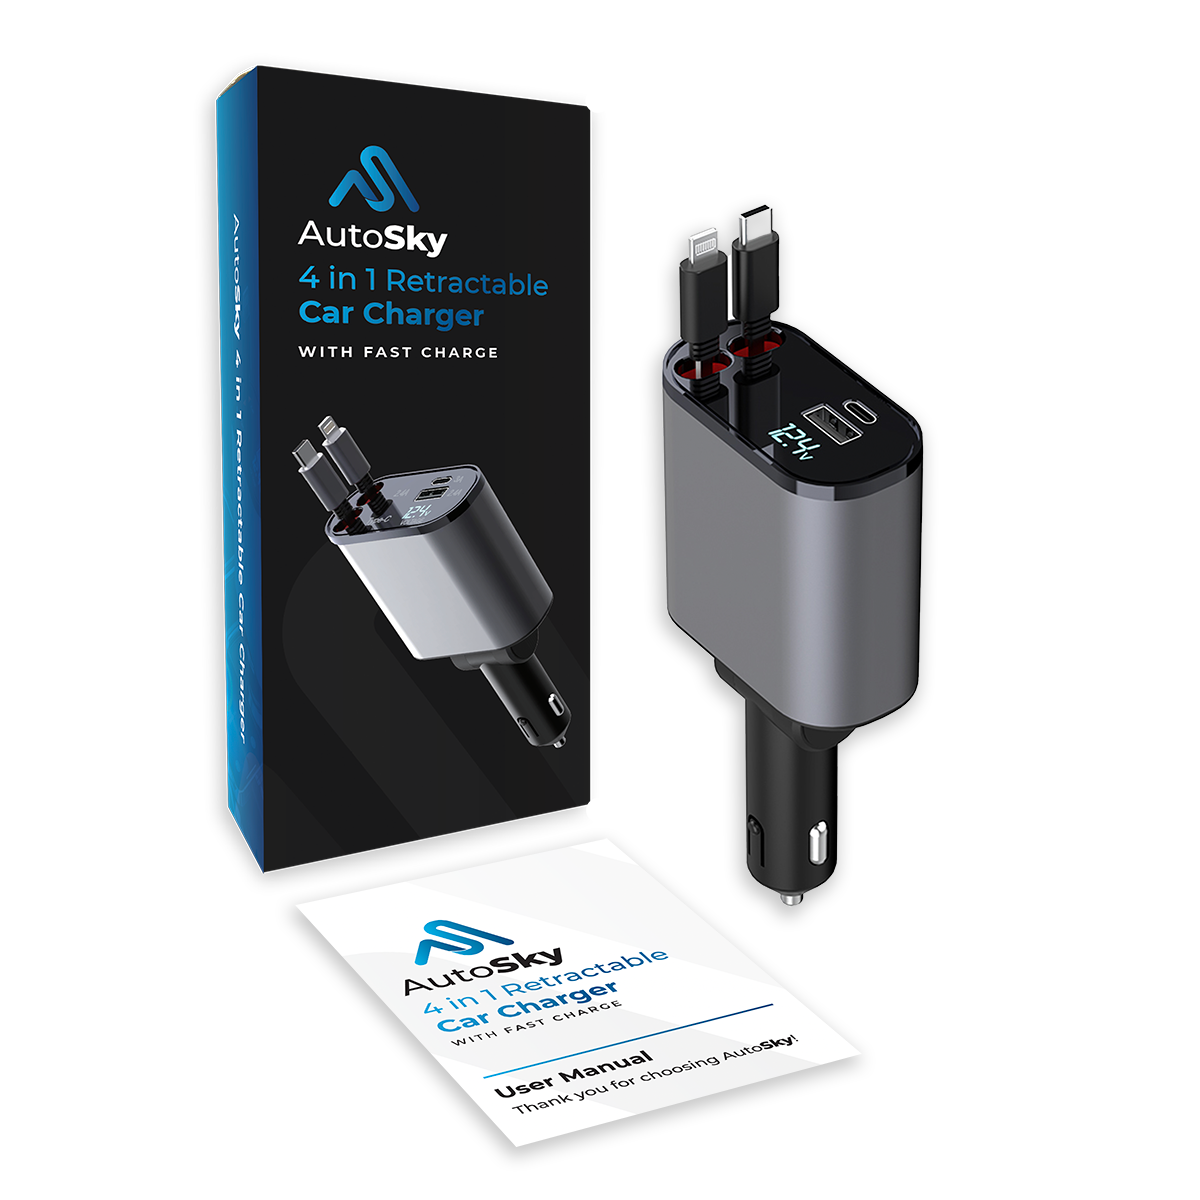 Cargador de coche retráctil 4 en 1 AutoSky con carga rápida: cable USB-C y Lightning, además de un puerto USB-C y USB-A